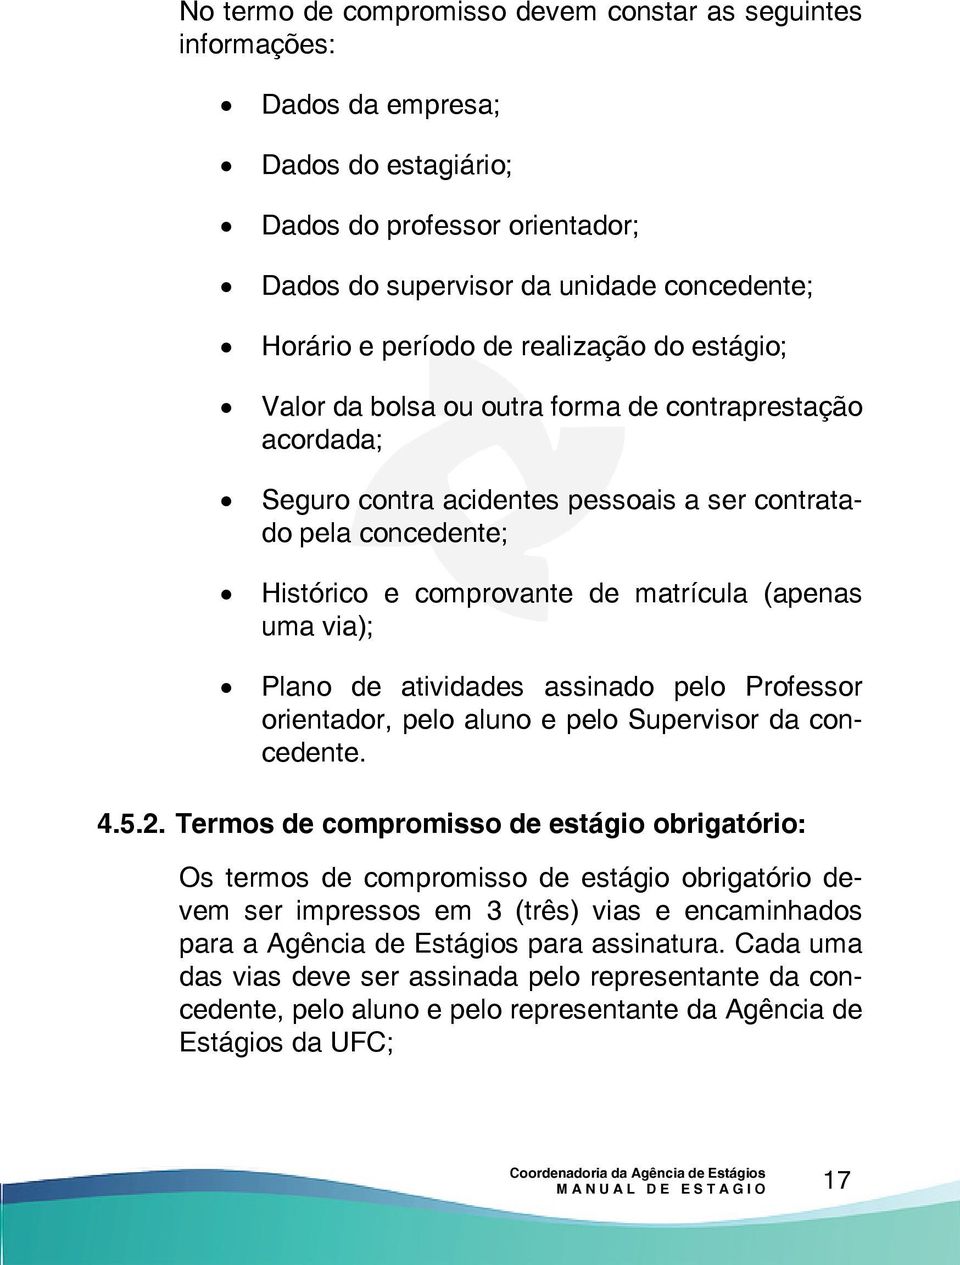 via); Plano de atividades assinado pelo Professor orientador, pelo aluno e pelo Supervisor da concedente. 4.5.2.